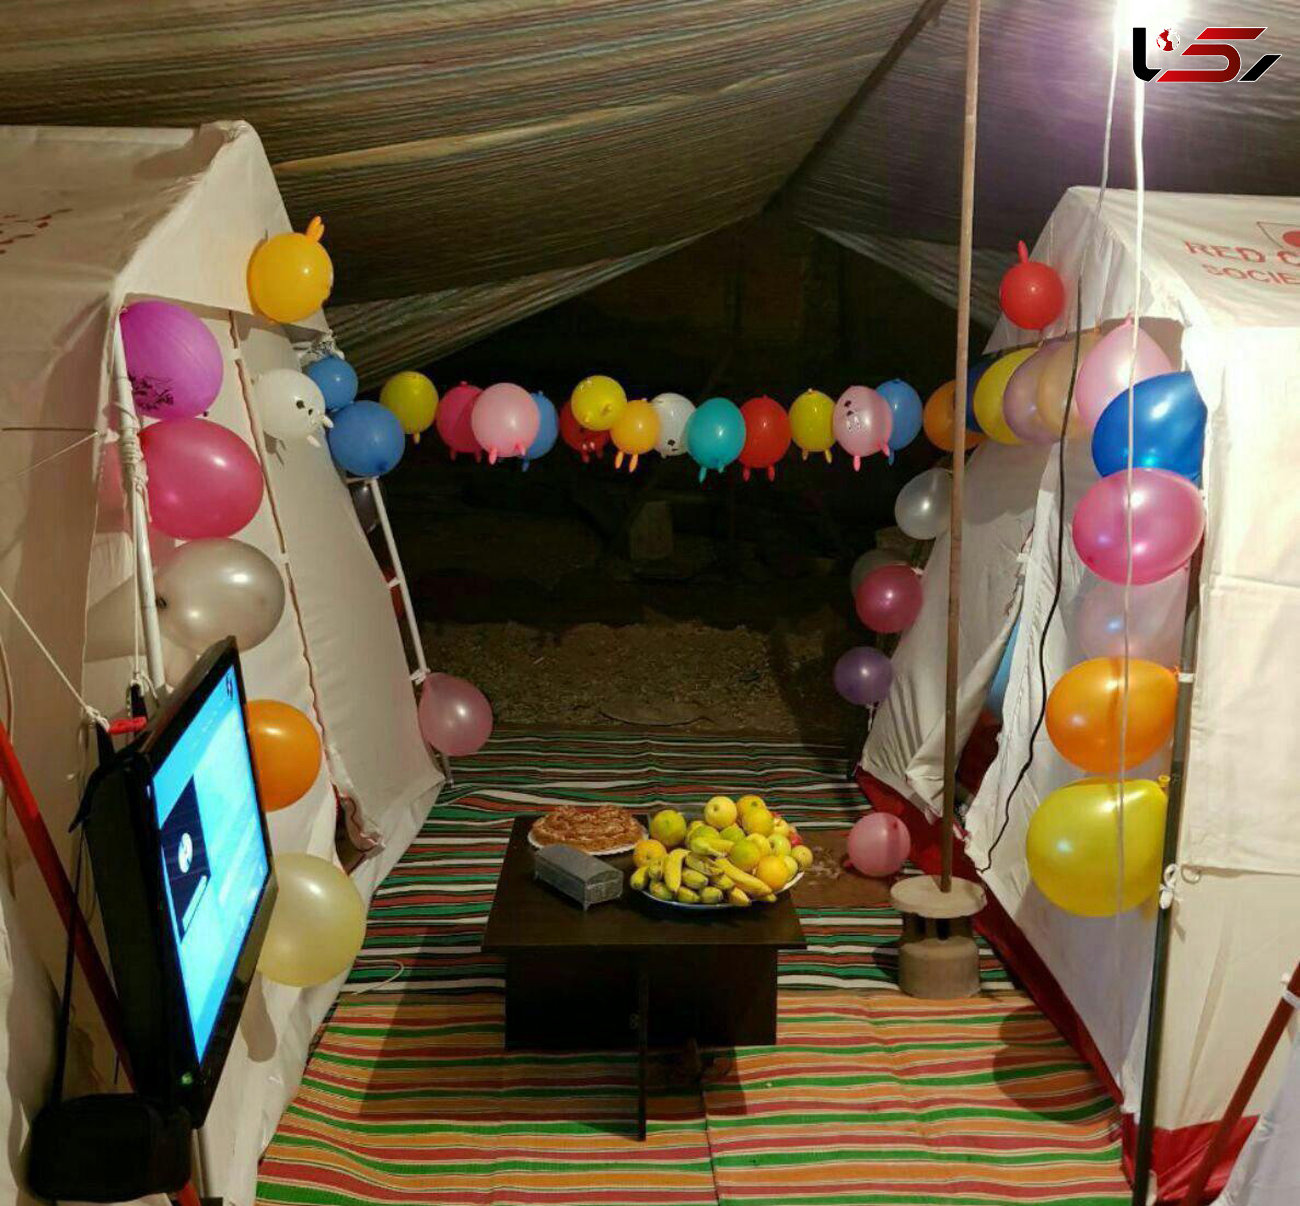 عکس / اولین جشن تولد در چادرهای زلزله زدگان کرمانشاه / دختر کرد 12 ساله شد